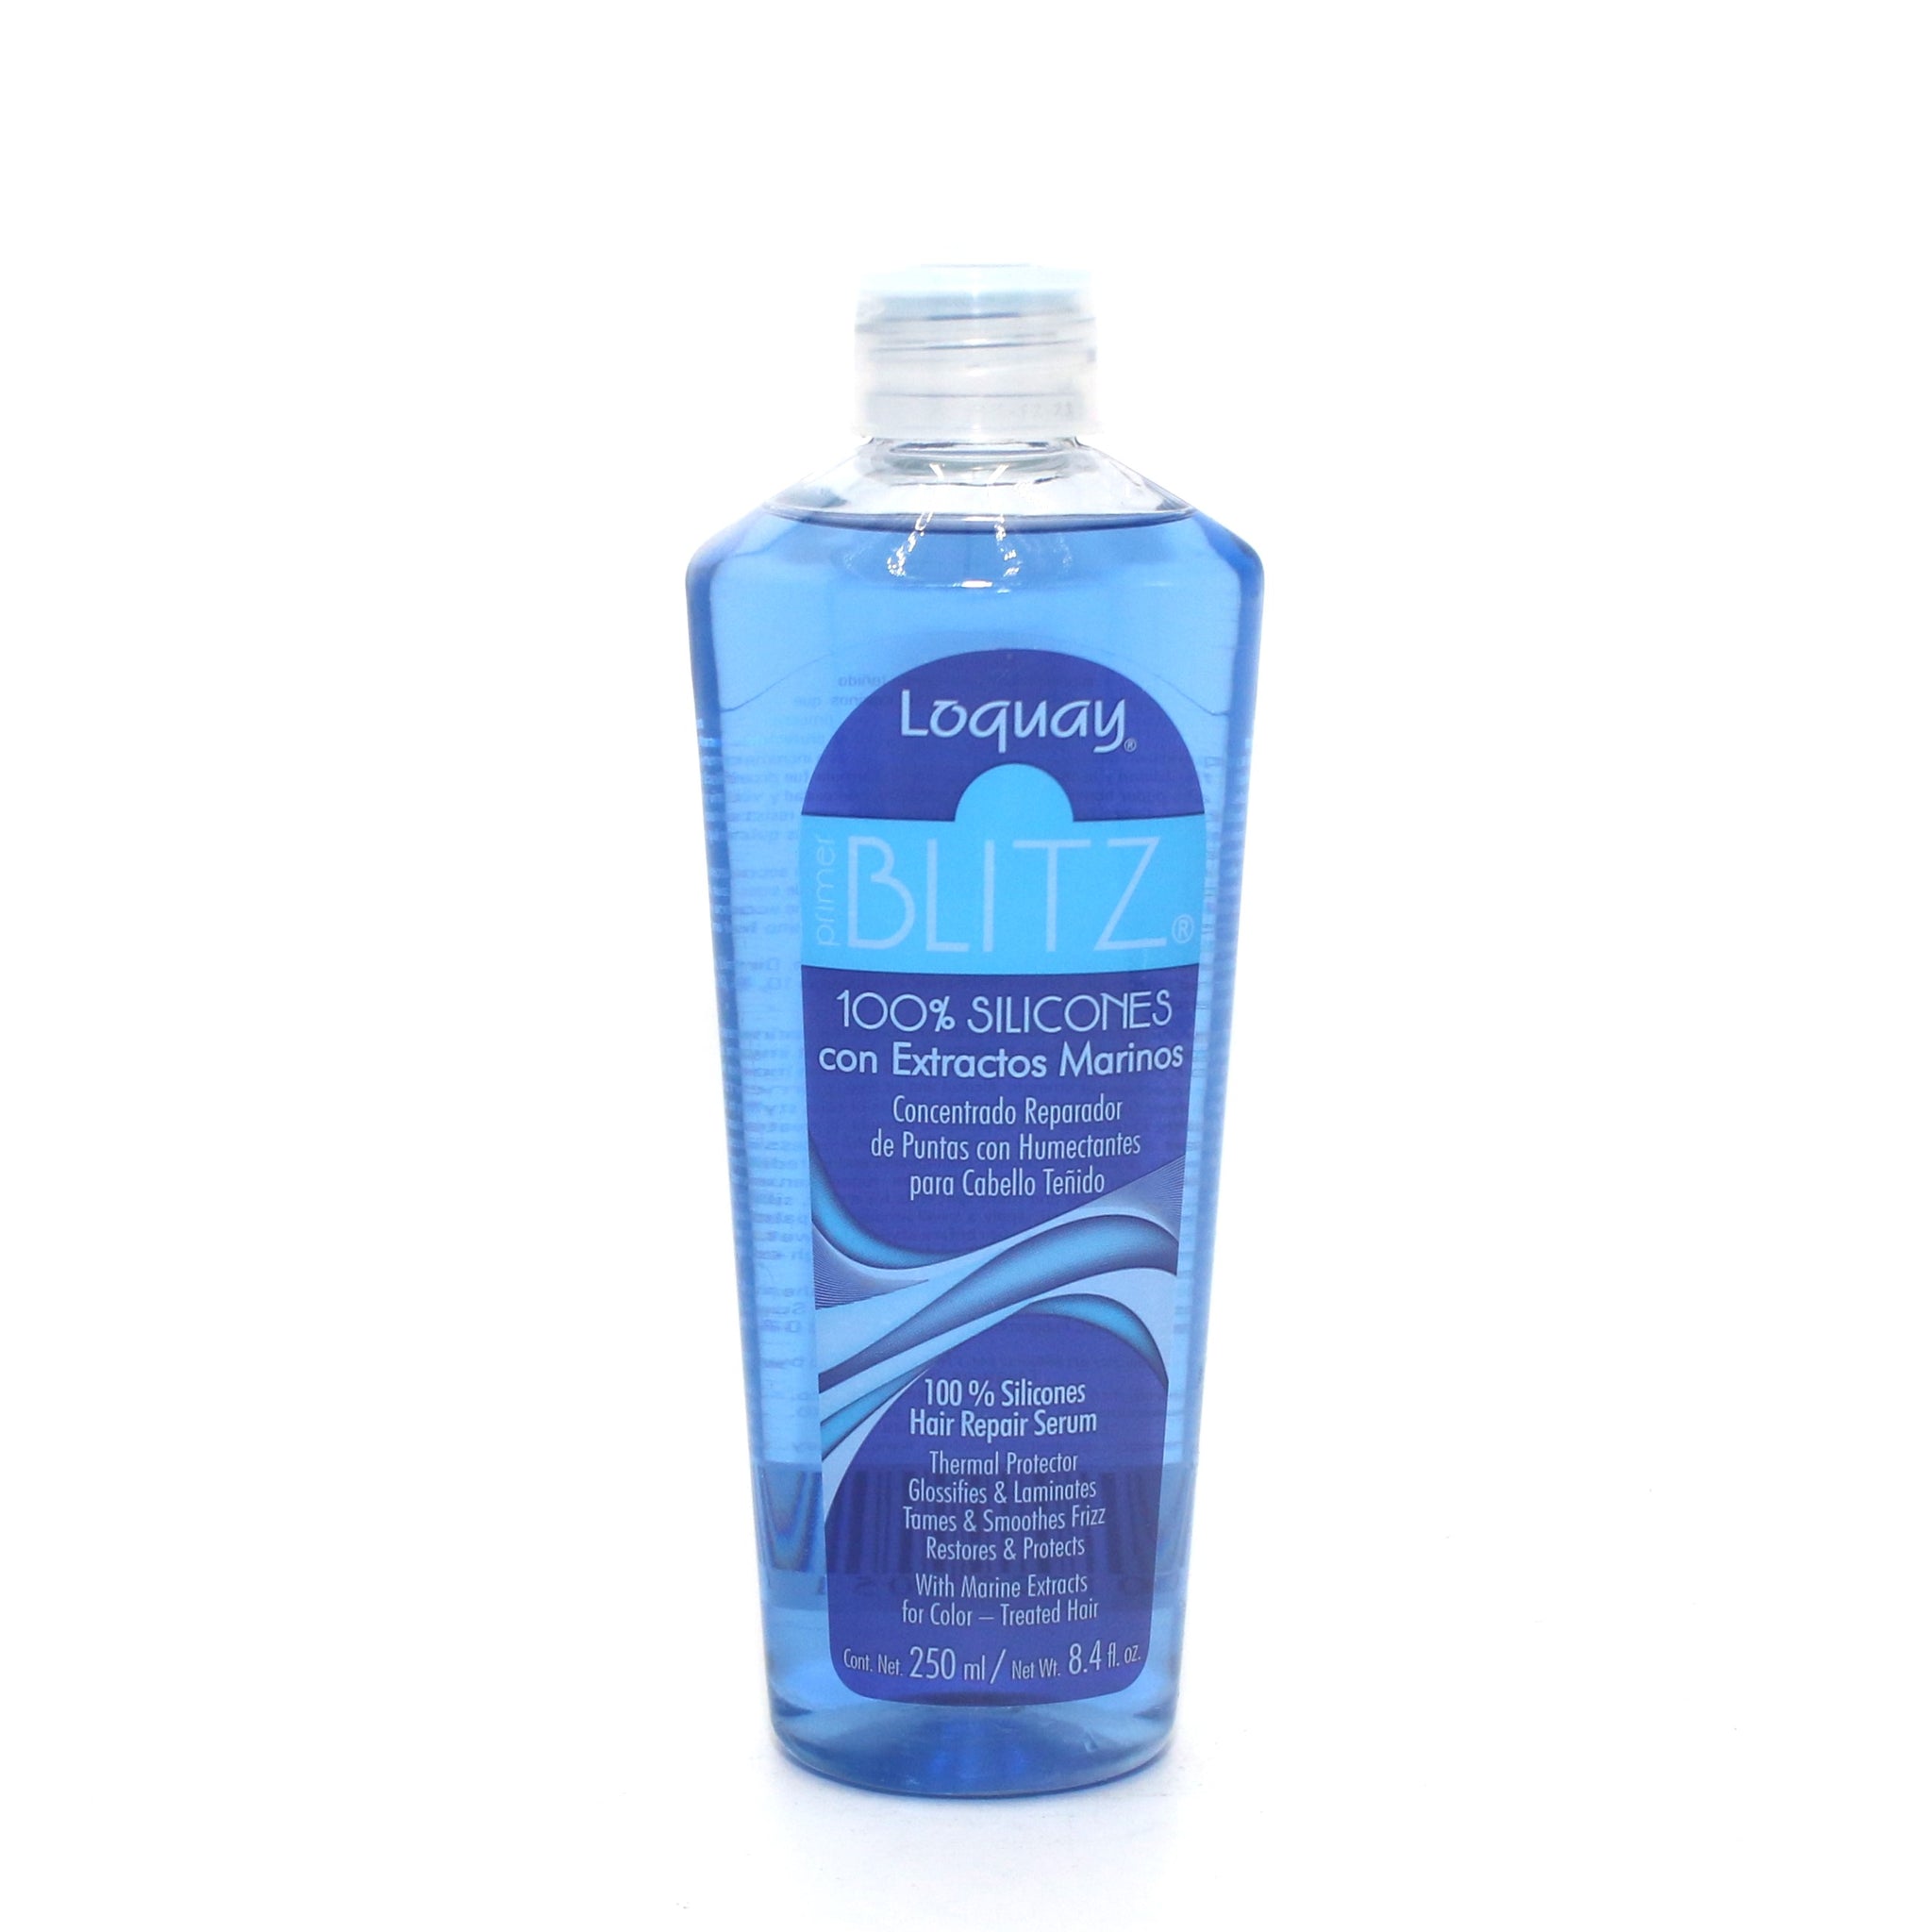 Loquay Primer Blitz 100% Silicones Hair Repair Serum 8.4 oz